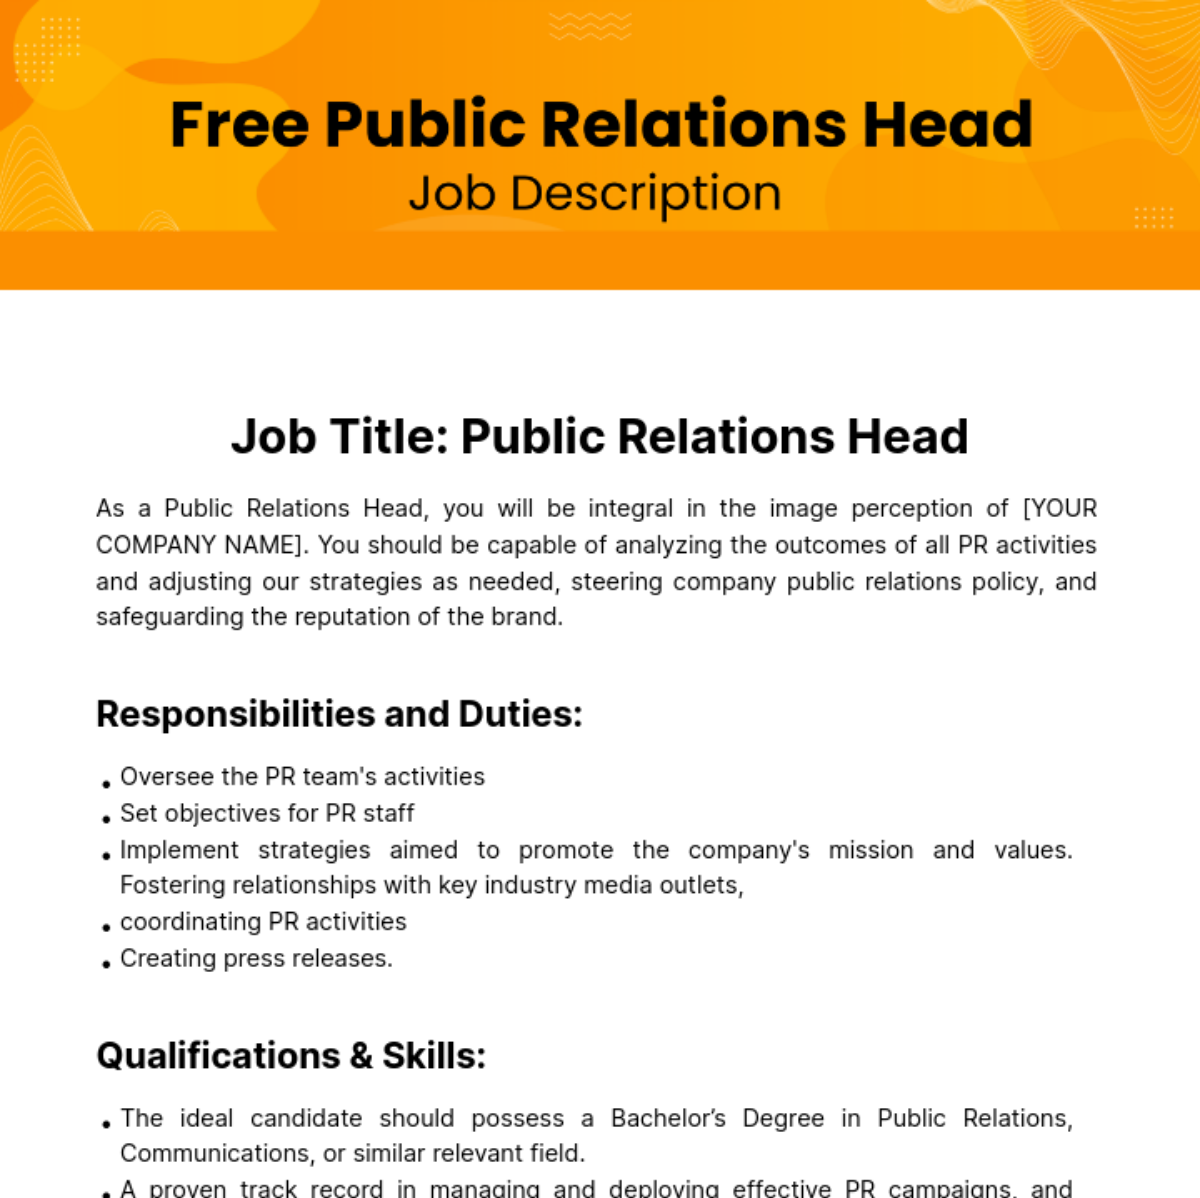 Public Relations (PR) Head Job Description Template